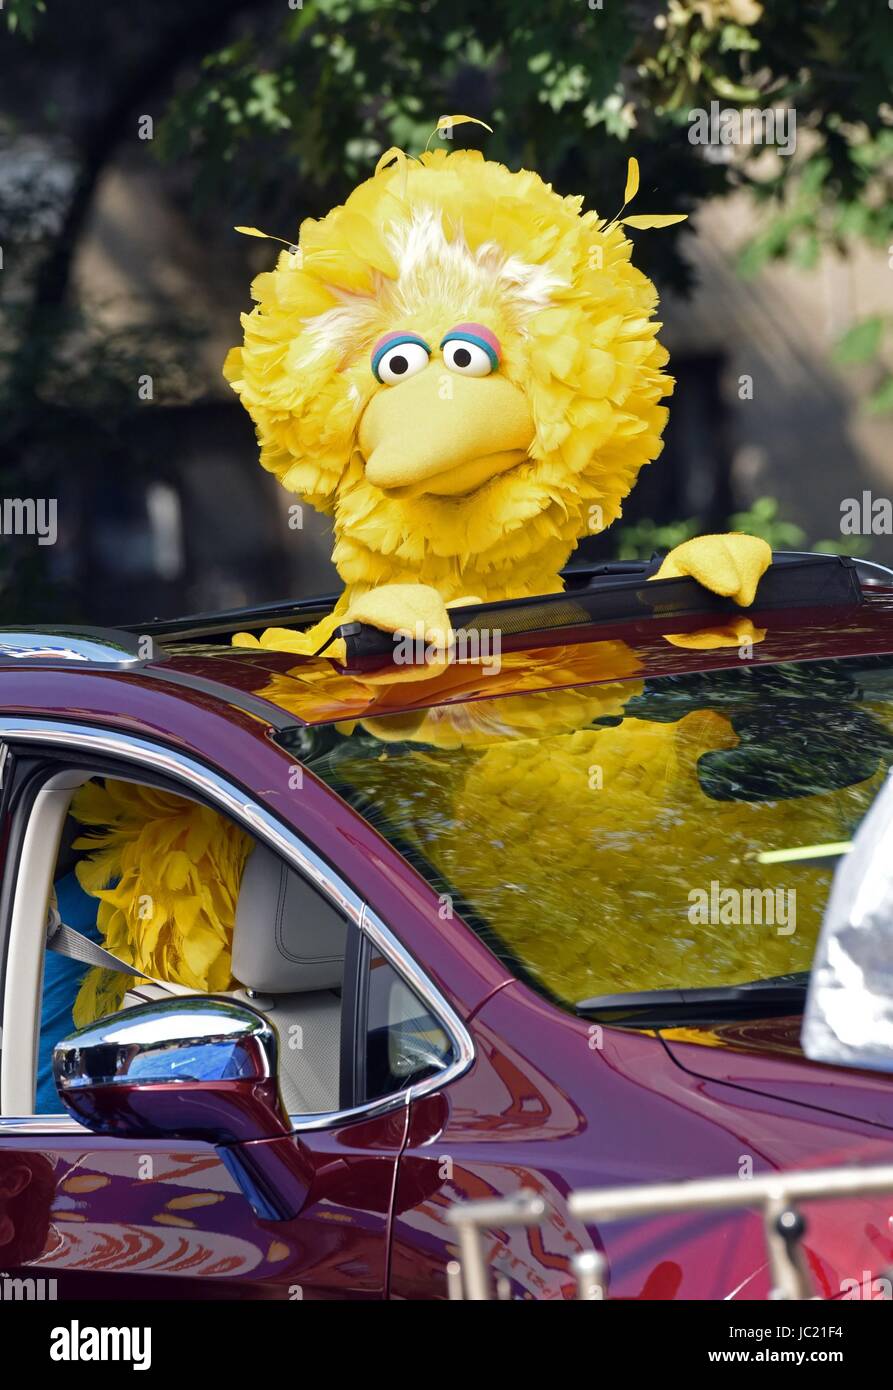 New York, NY, USA. 13 Juin, 2017. Big Bird de Sesame Street sur emplacement pour Sesame Street Films sur emplacement dans NYC, New York, NY, le 13 juin 2017. Credit : Derek Storm/Everett Collection/Alamy Live News Banque D'Images